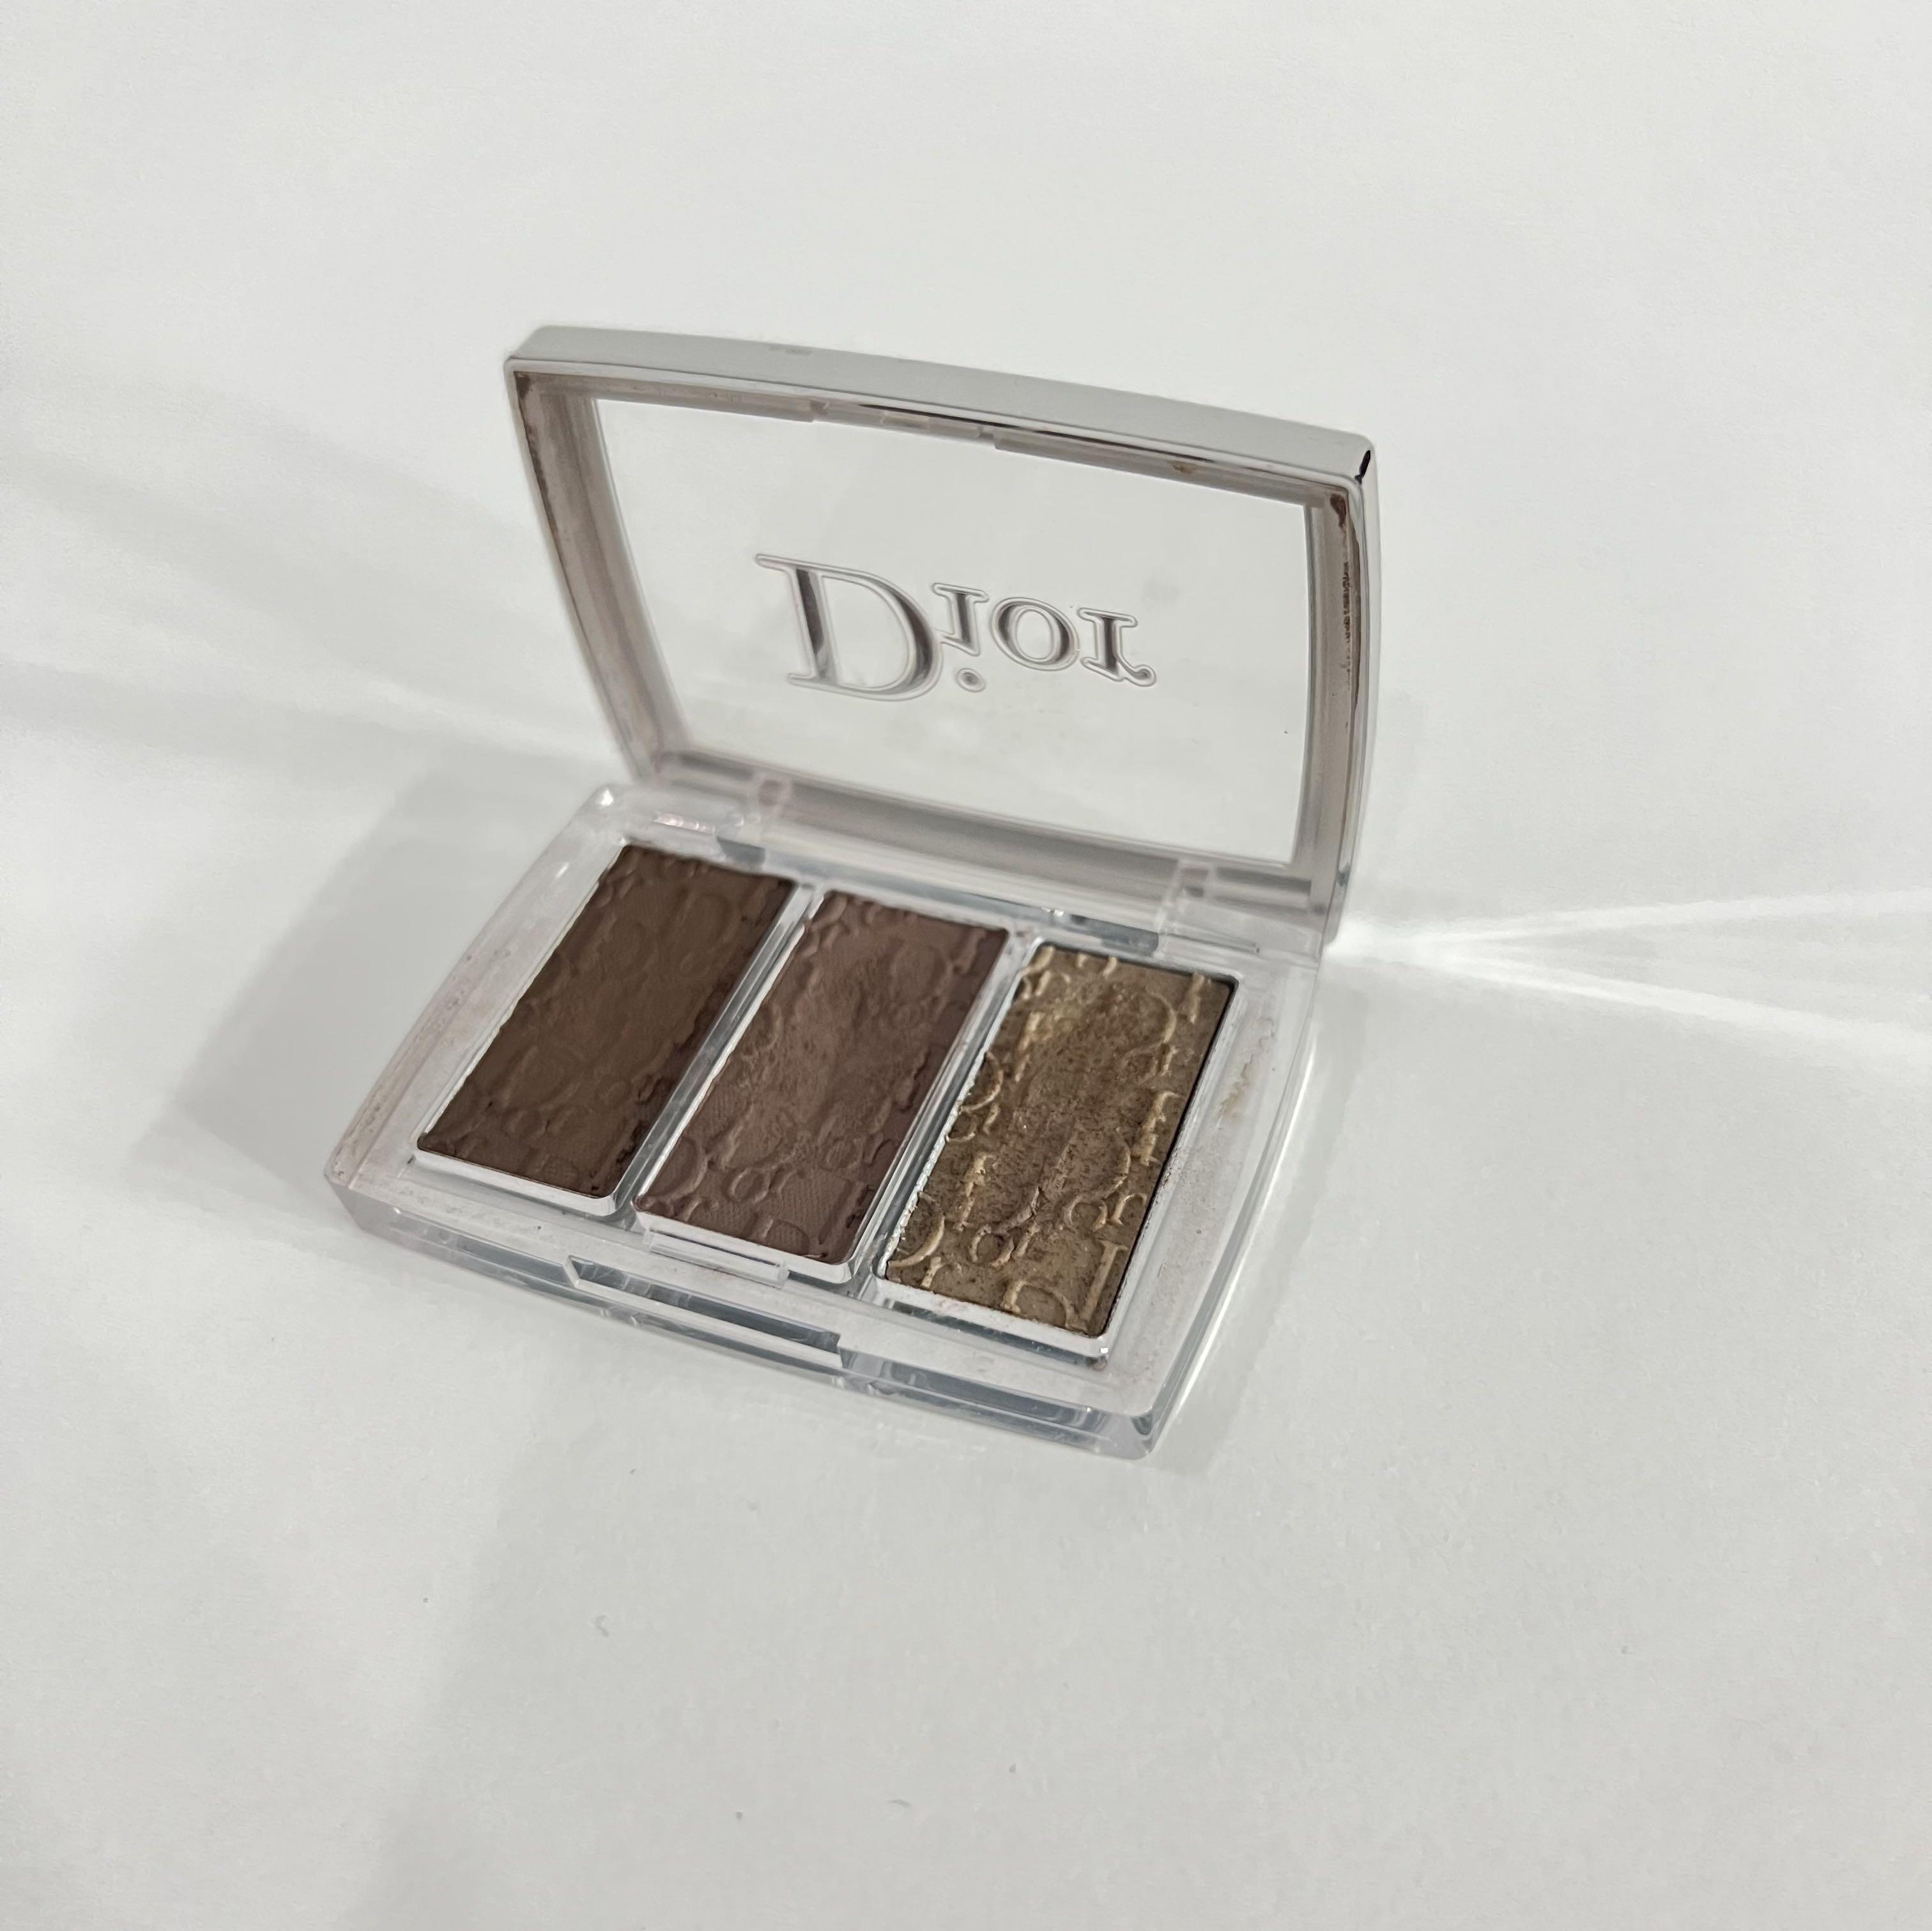 Dior Backstage Brow Palette - 002 Dark